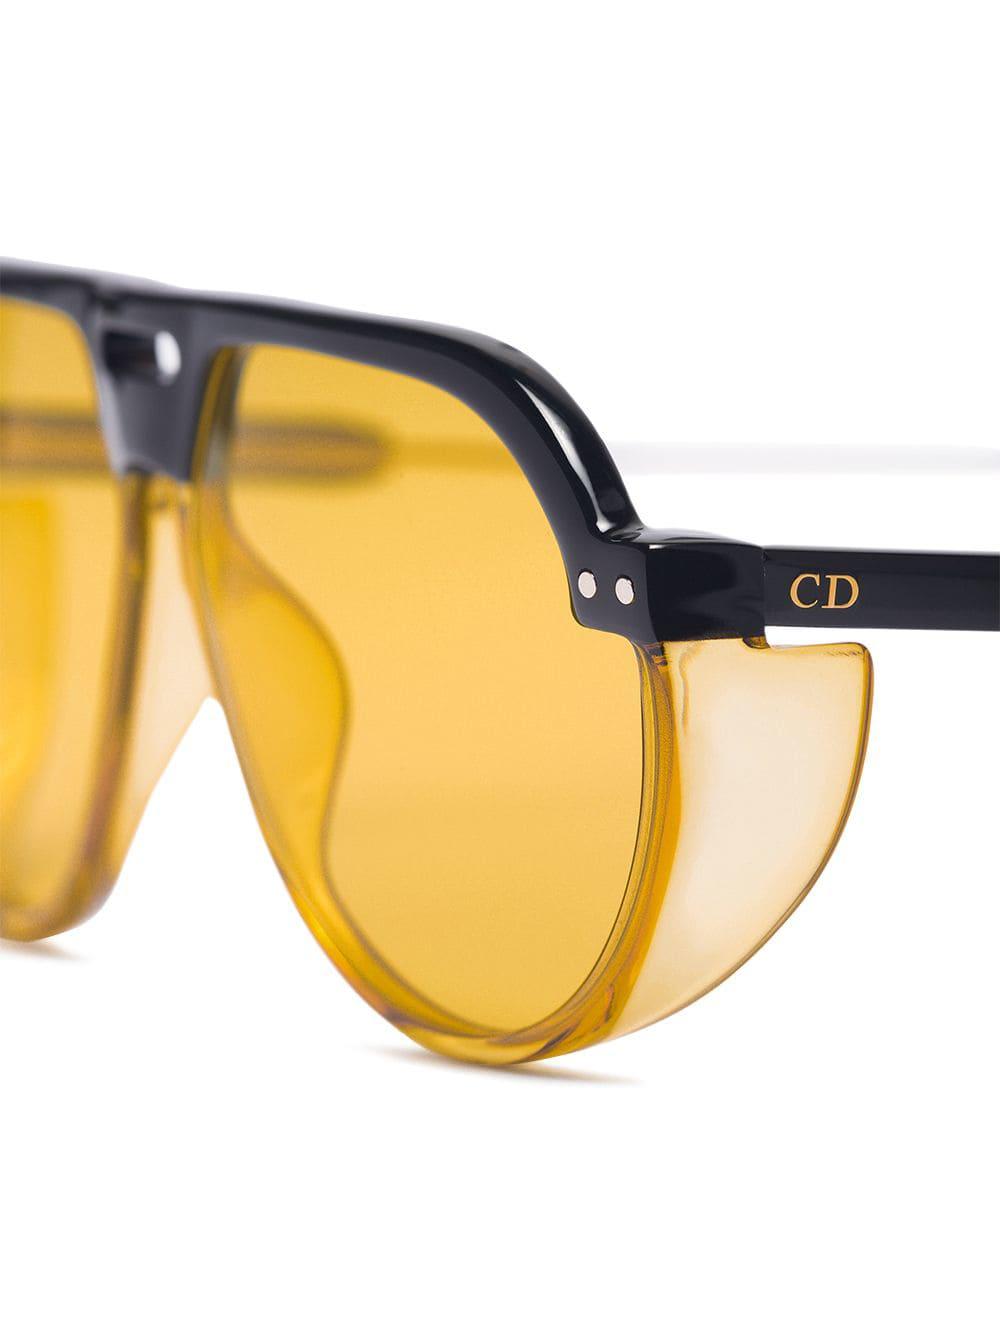 Dior Club 3 Aviator Sunglasses in Brown | Lyst